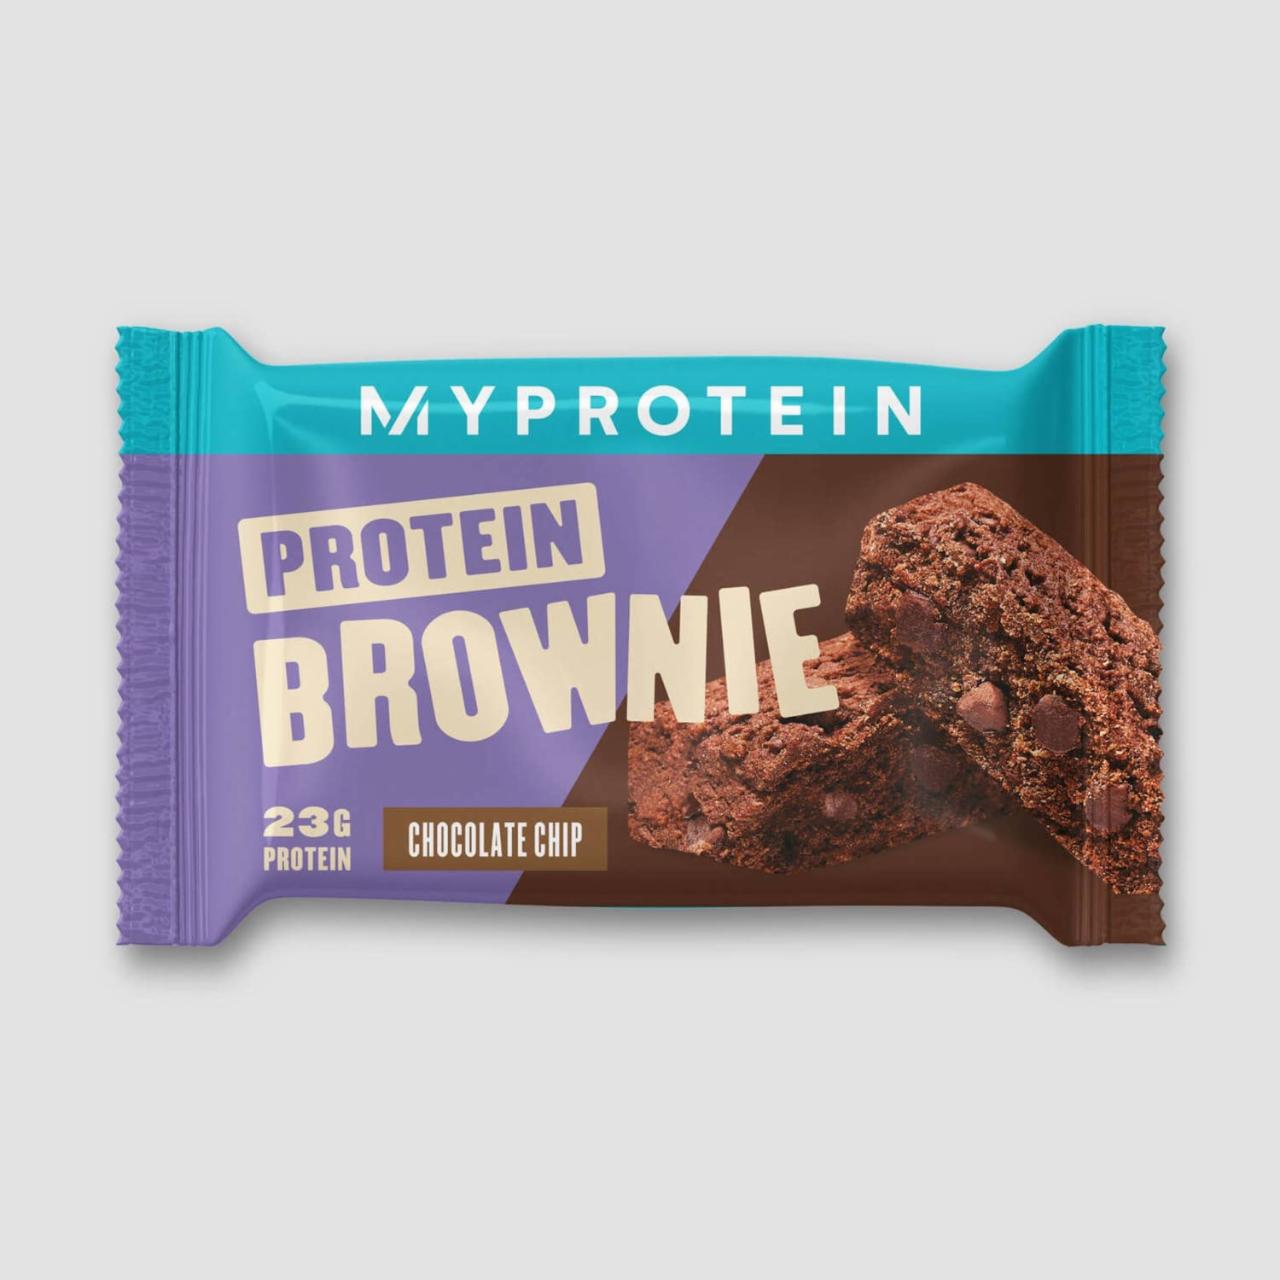 Fotografie - Protein Brownie chocolate chip flavour MyProtein